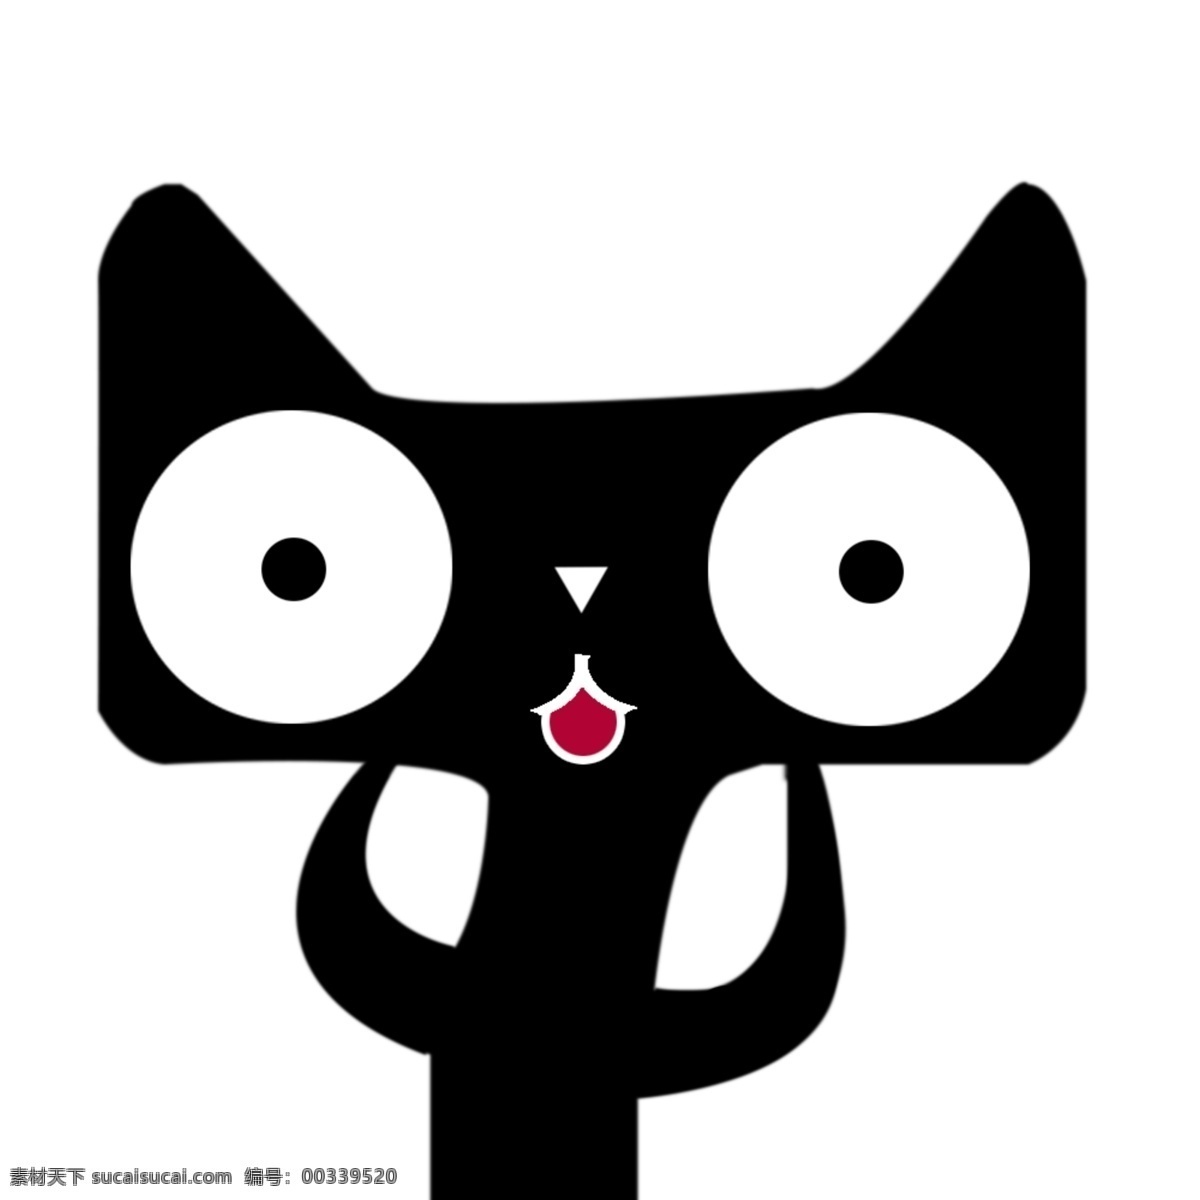 分层 黑猫 卡通猫 猫 天猫 天猫logo 天猫商城 源文件 logo 模板下载 psd源文件 logo设计